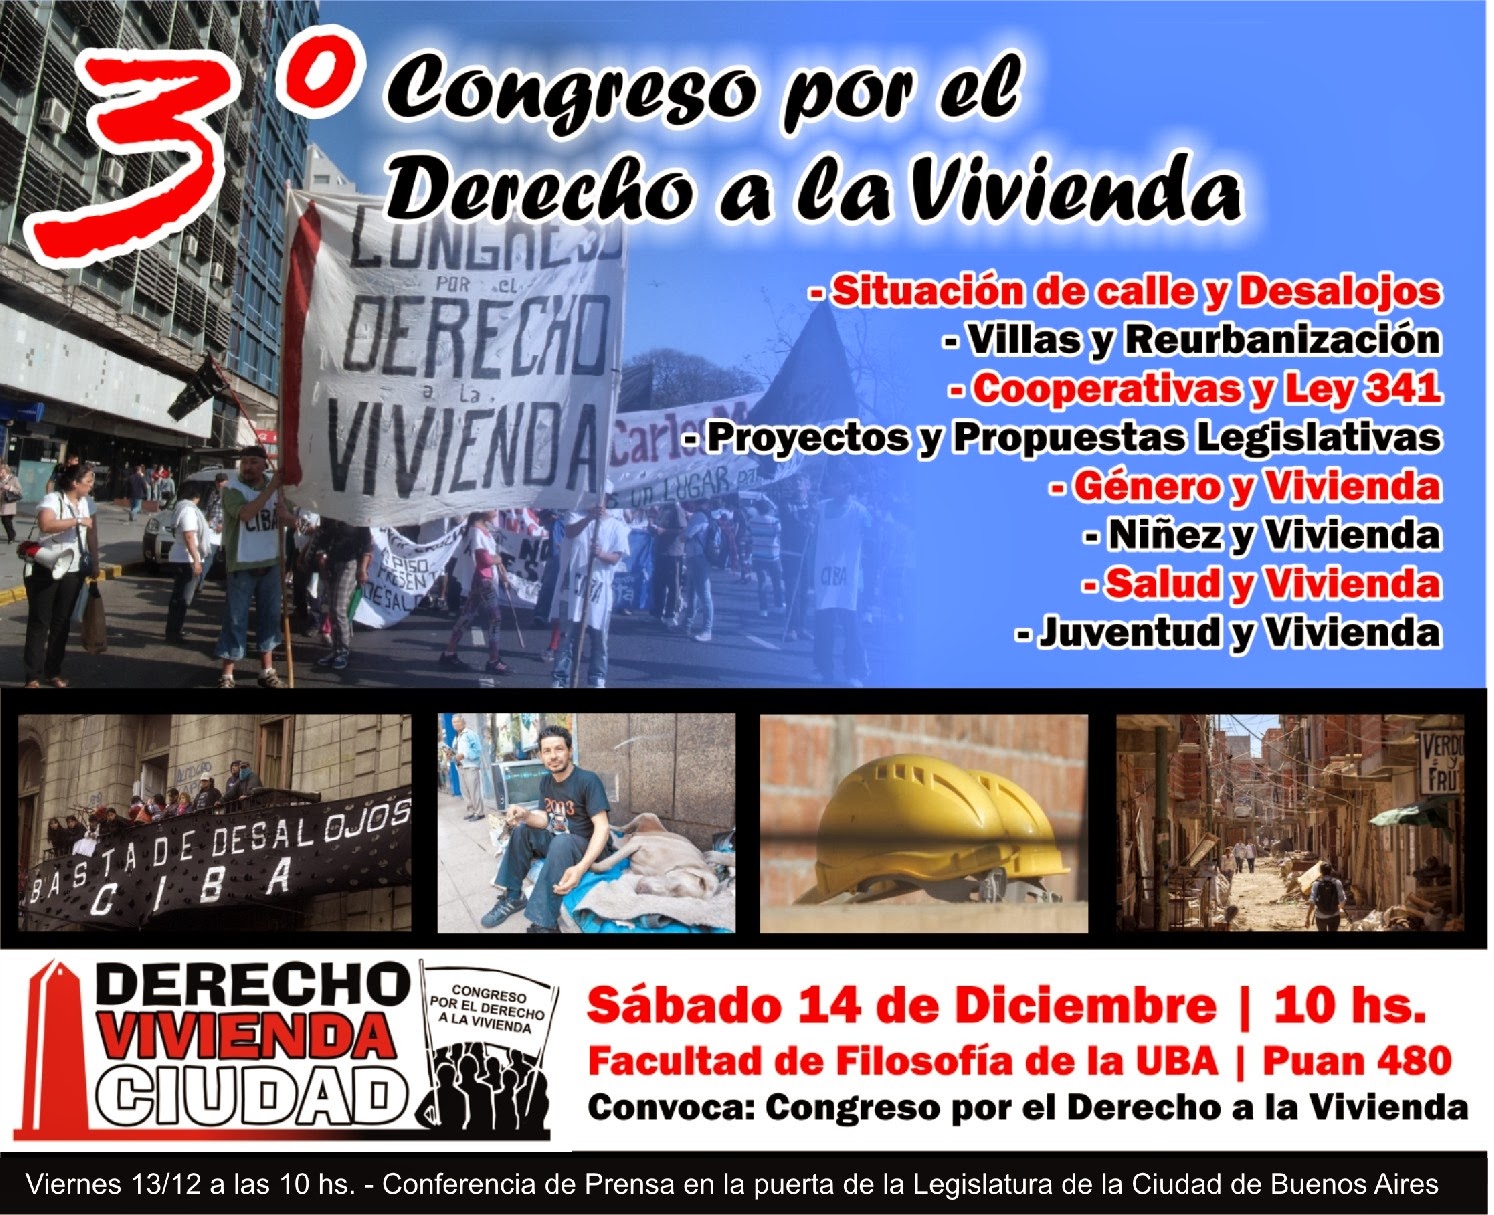 Habitar Argentina: Tercer Congreso por el derecho a la 